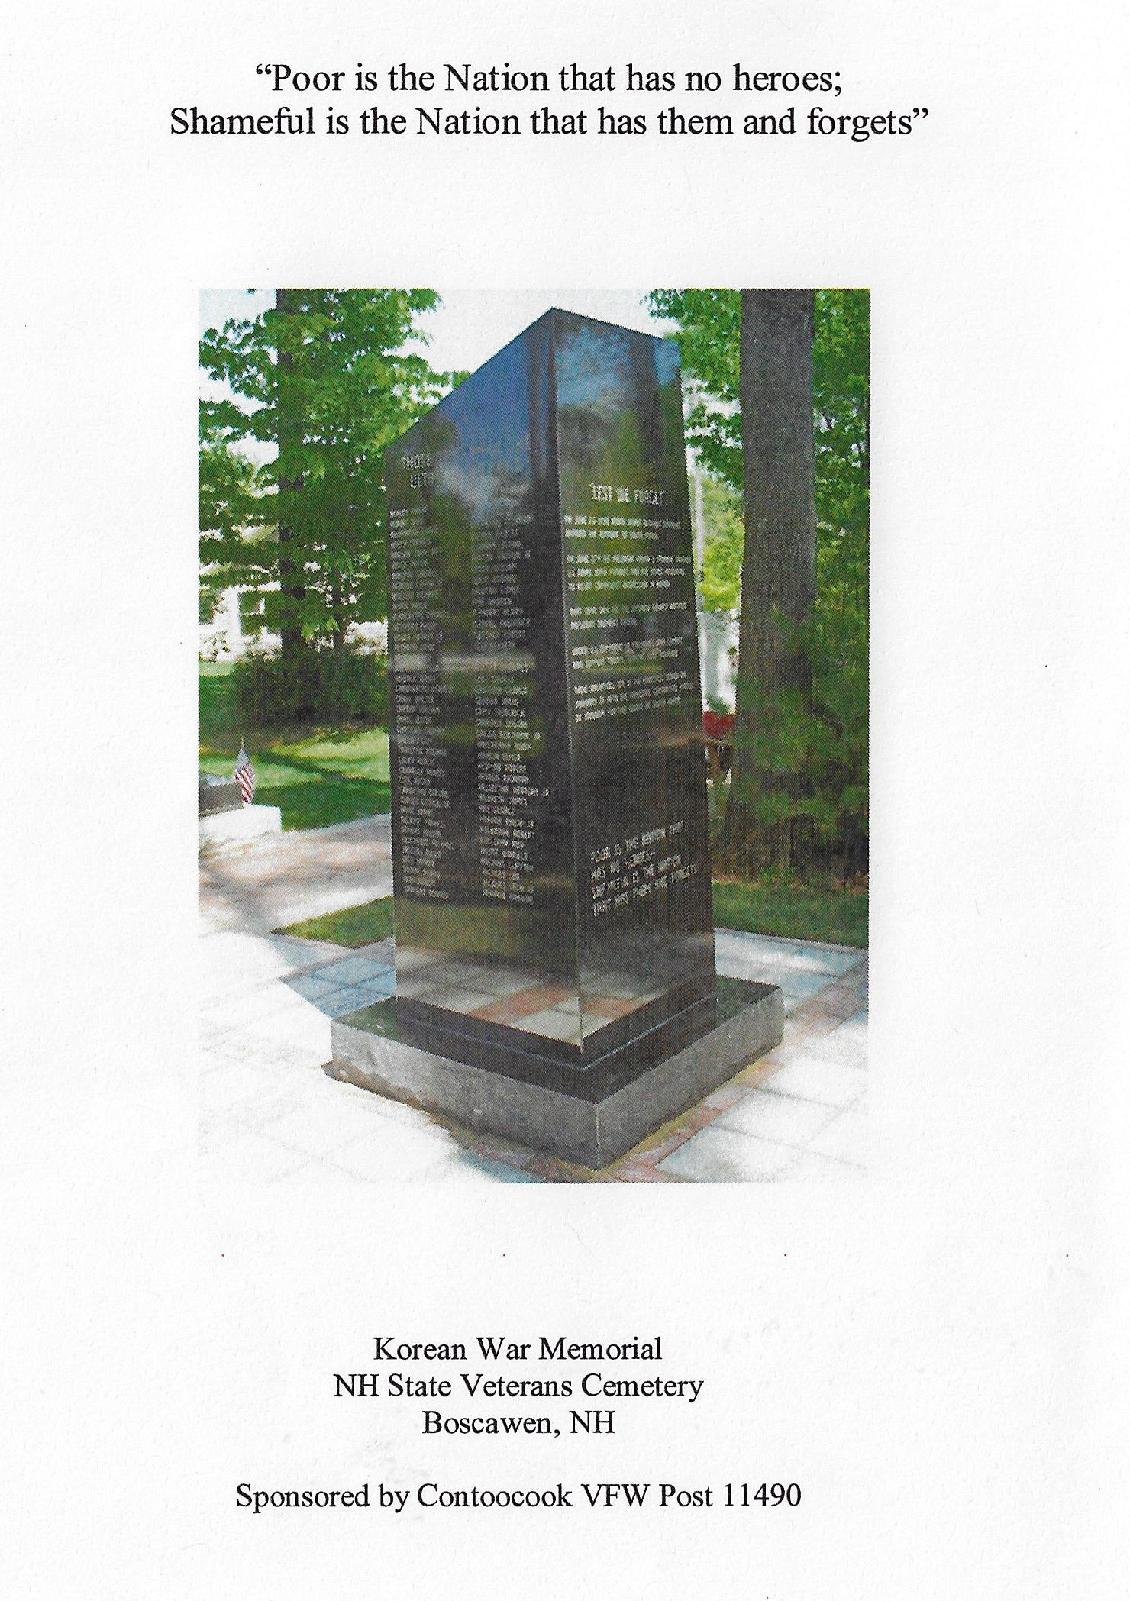 Korean War Memorial Dedication - NH State Veterans Cemetery